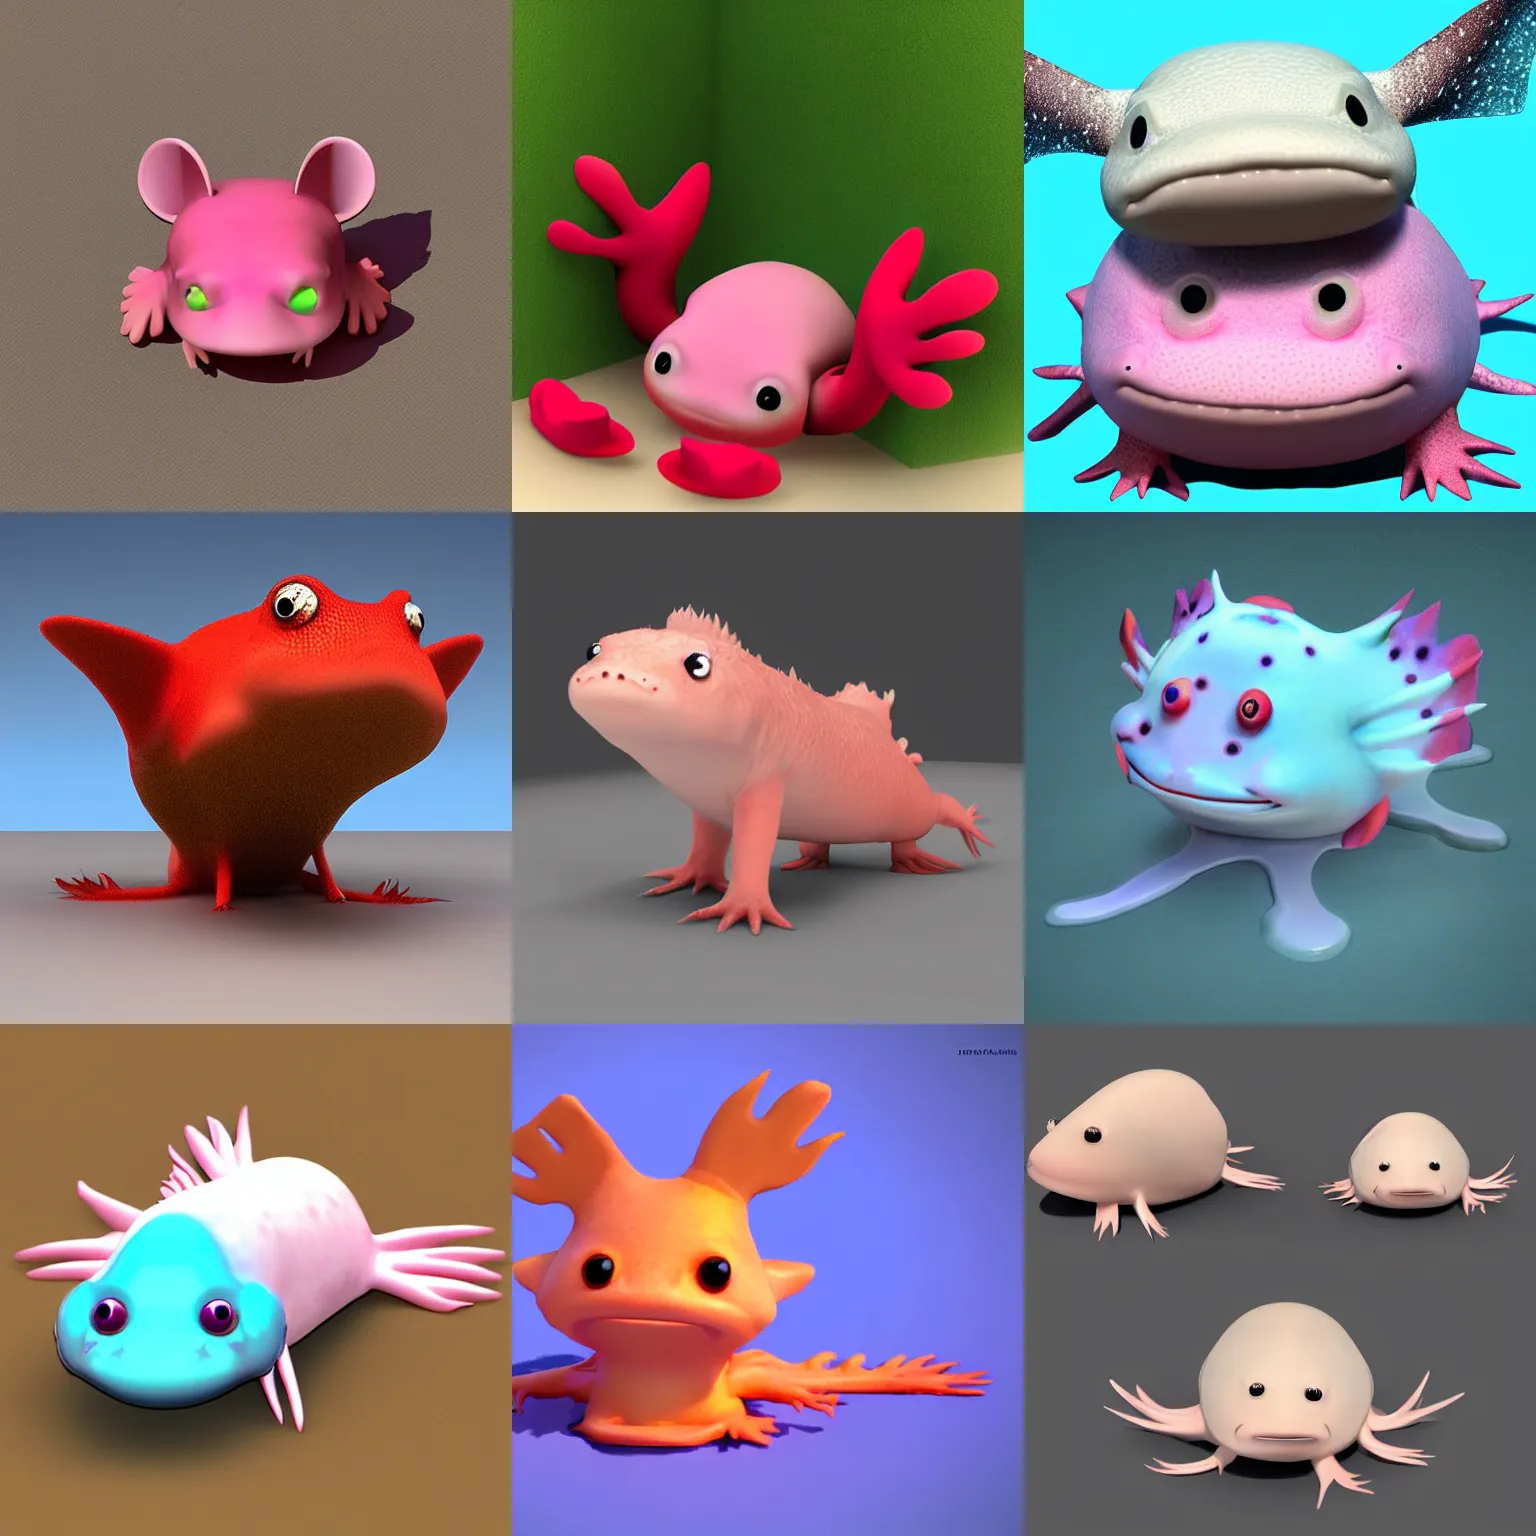 Prompt: cute axolotl 3 d digital art, cgi